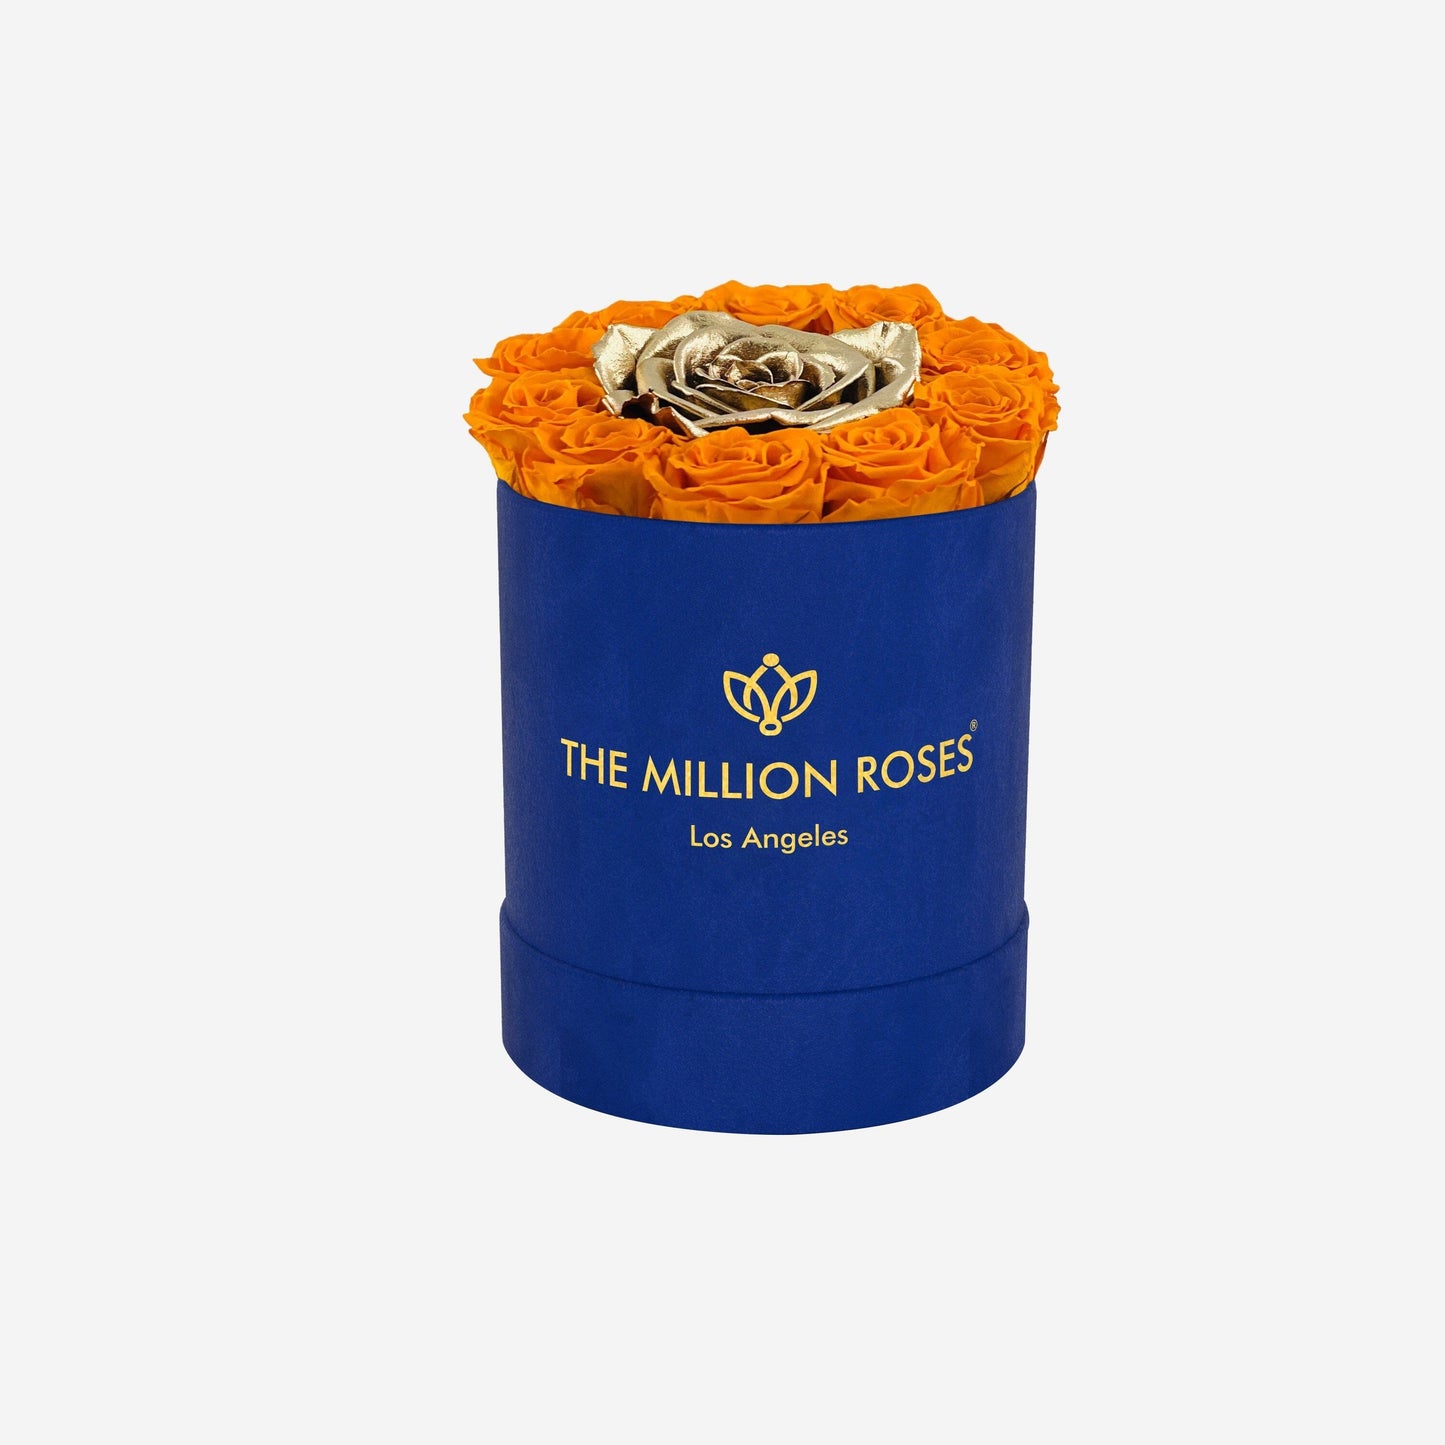 Basic Royal Blue Suede Box | Orange & Gold Mini Roses